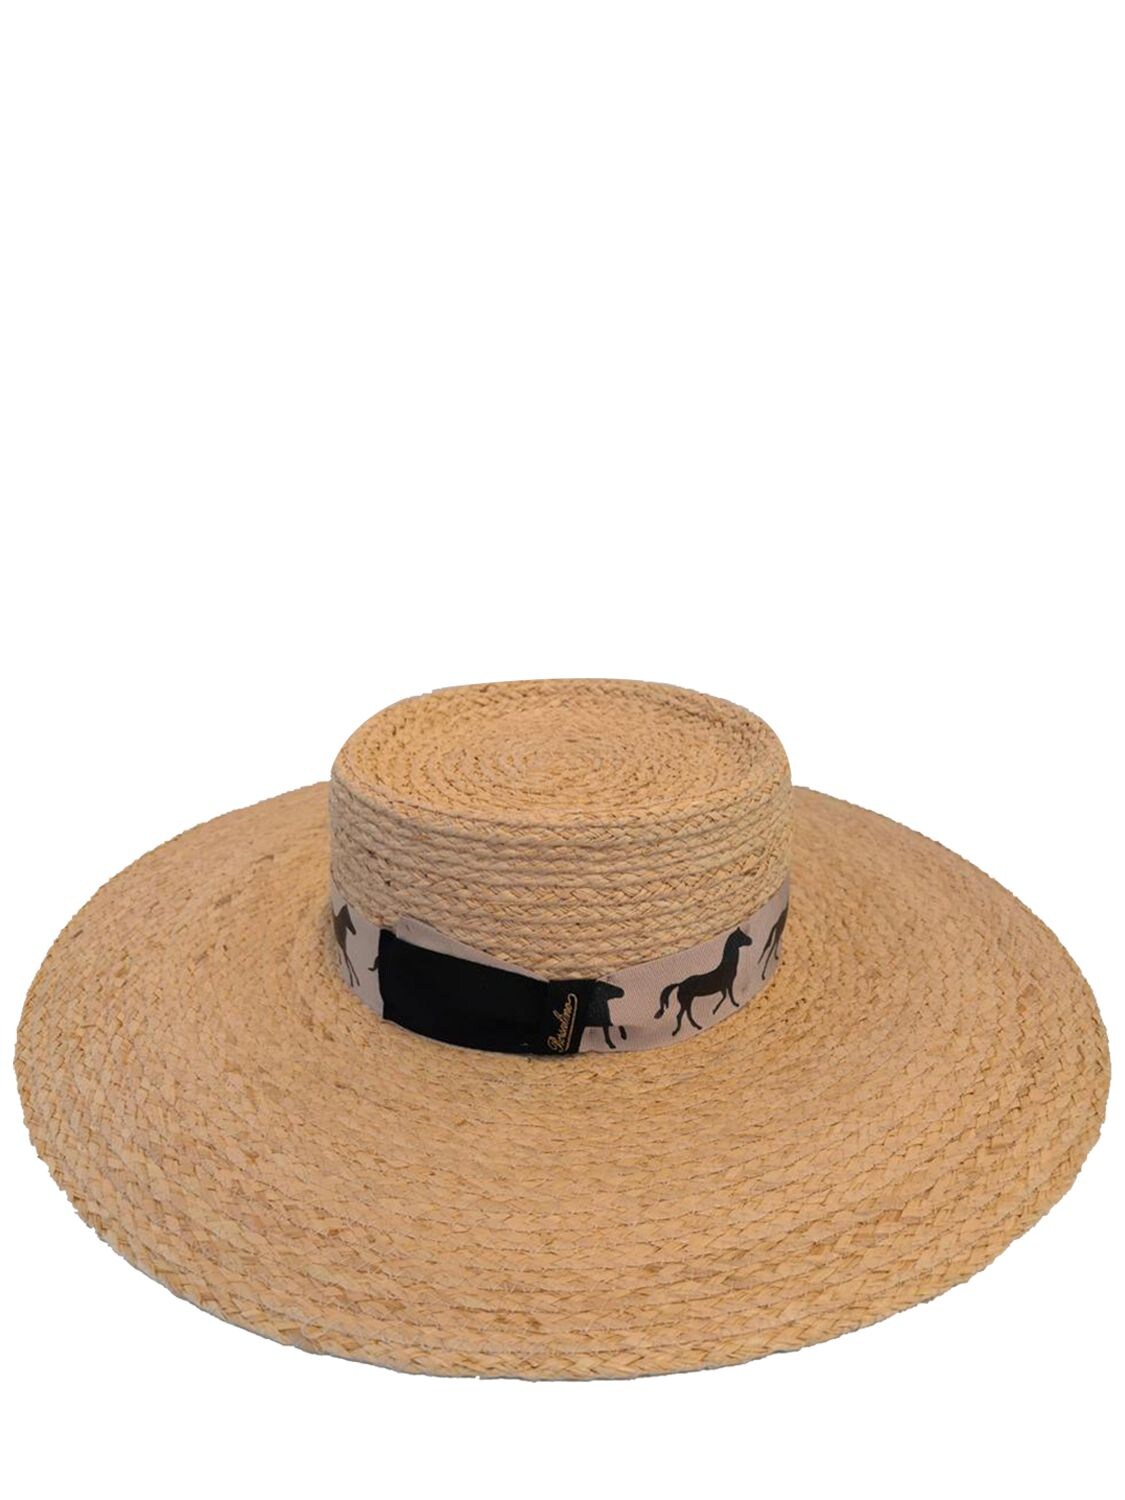 Acheval Pampa Borsalino X Àcheval Gaucho Straw Hat In Beige